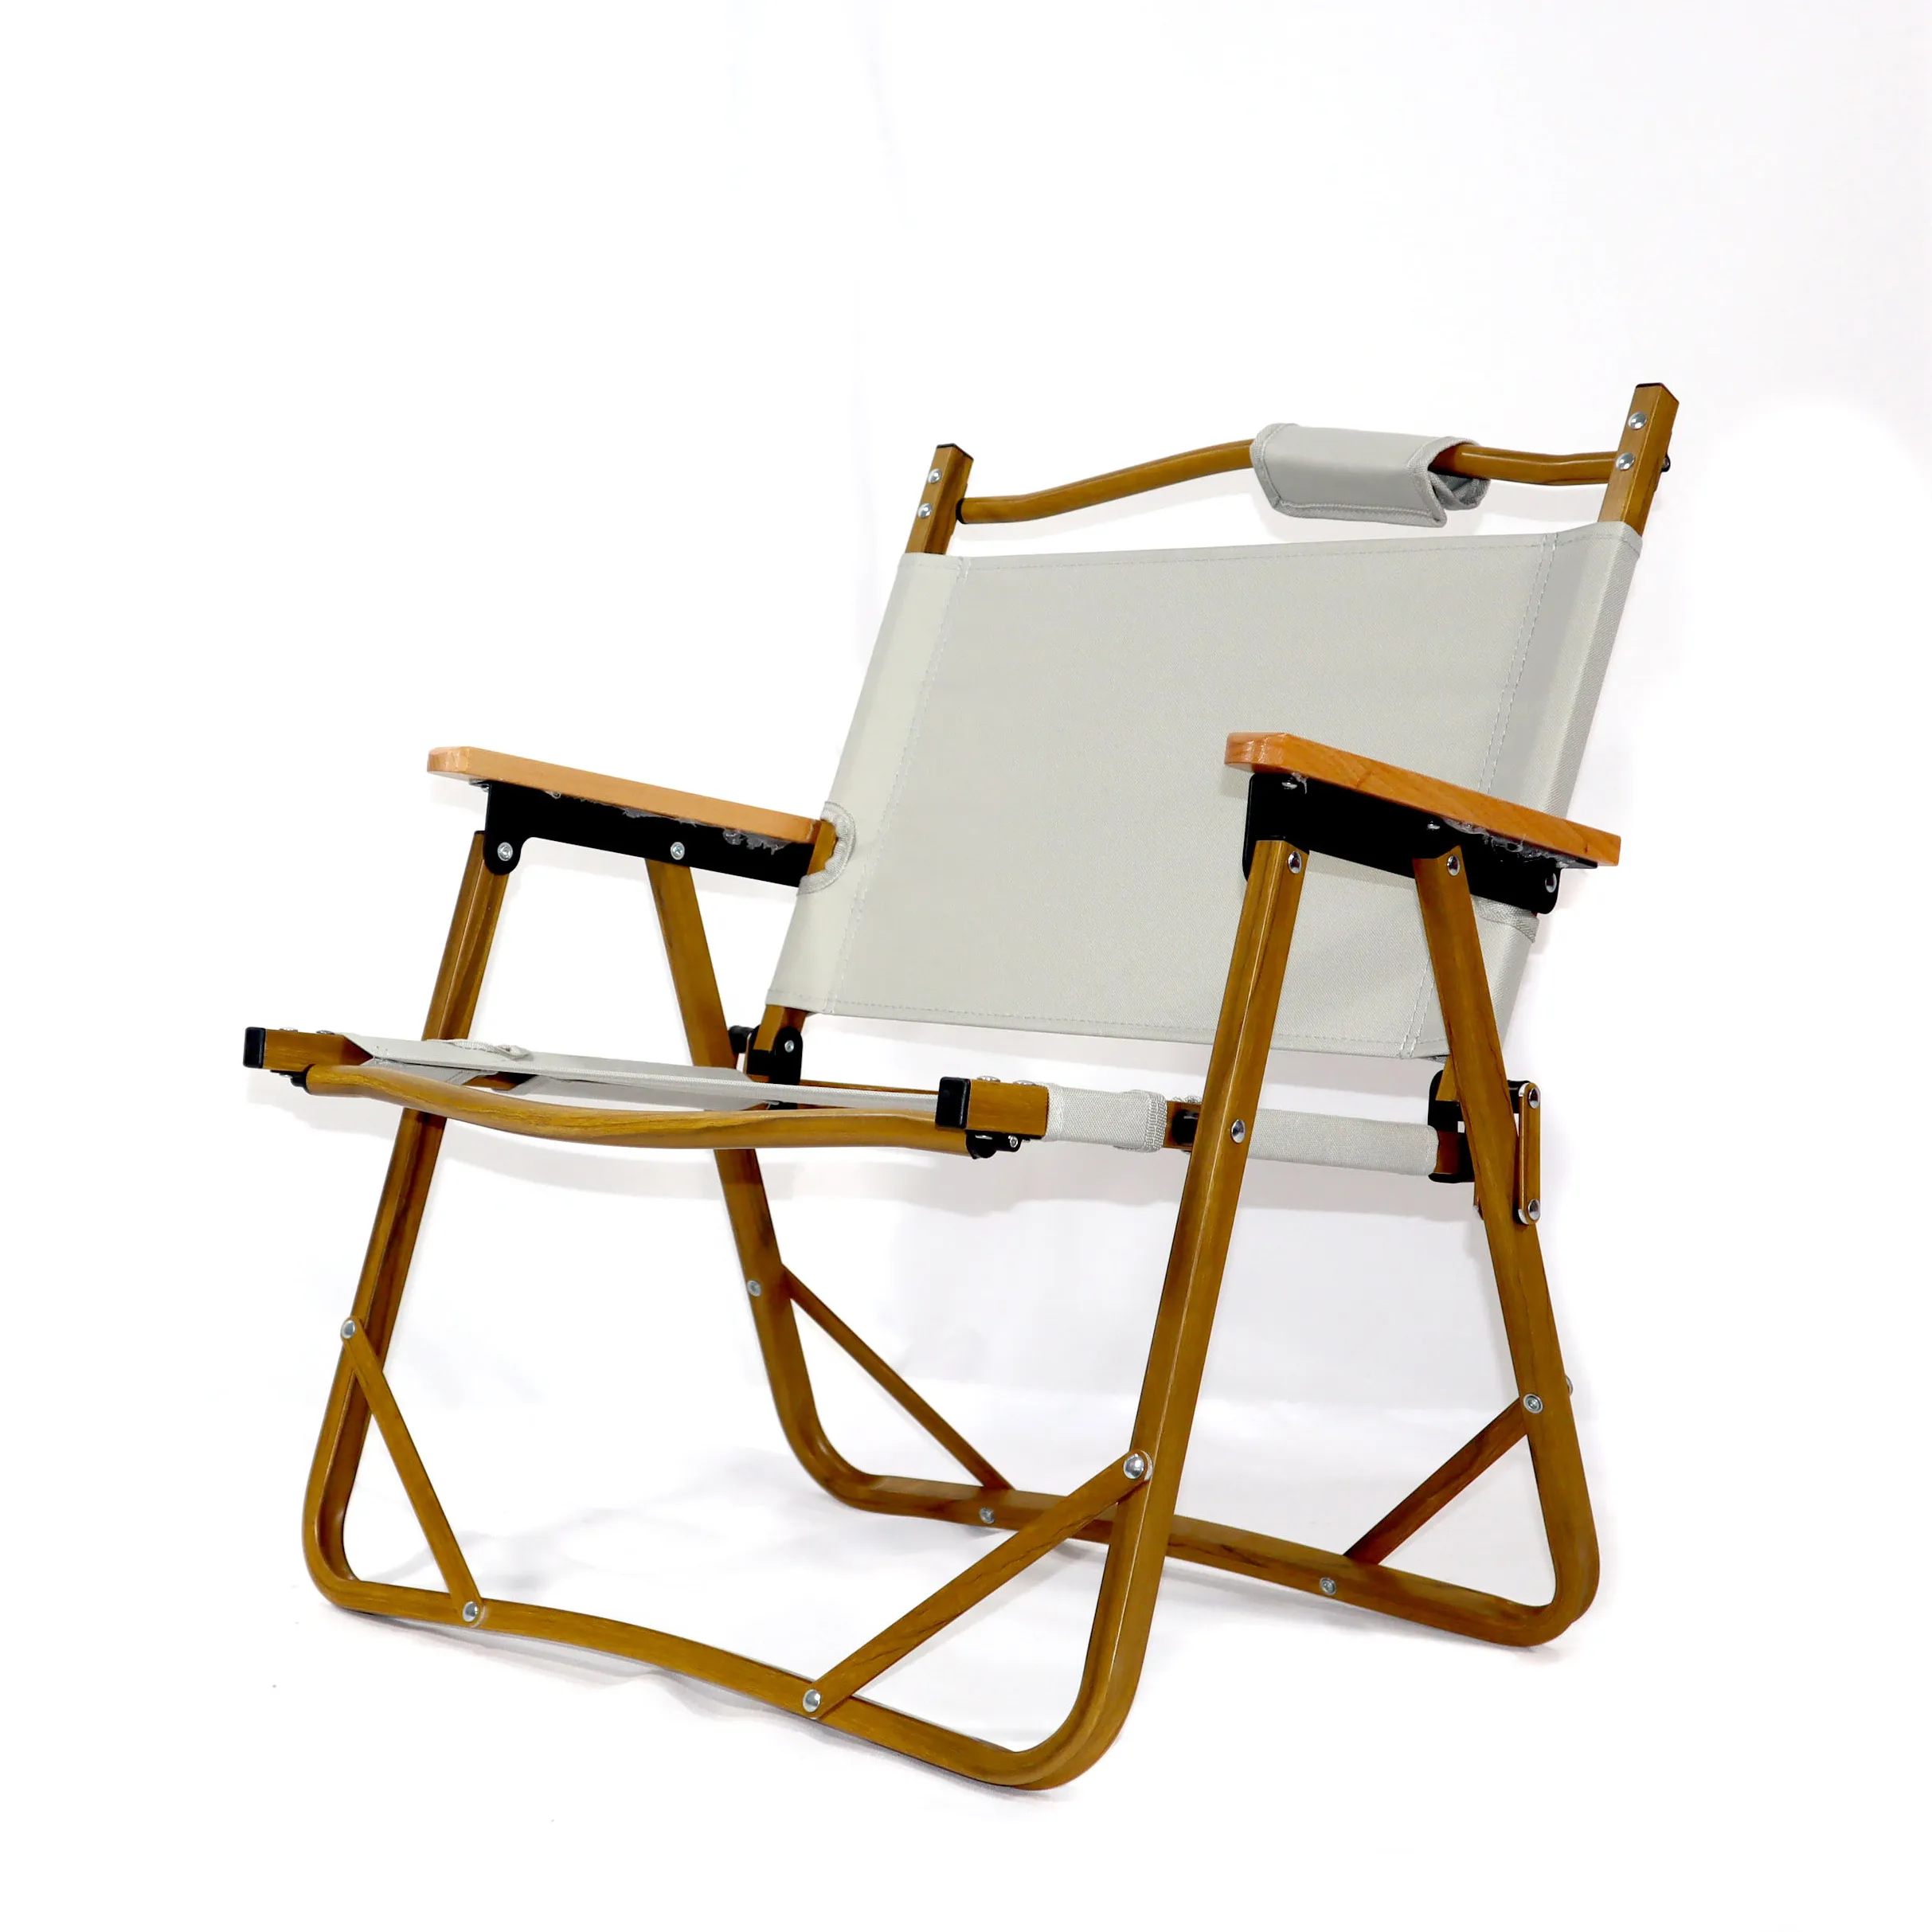 Tragbarer faltbarer Camping-Klapptisch und Stühle aus Aluminium in modernem Design